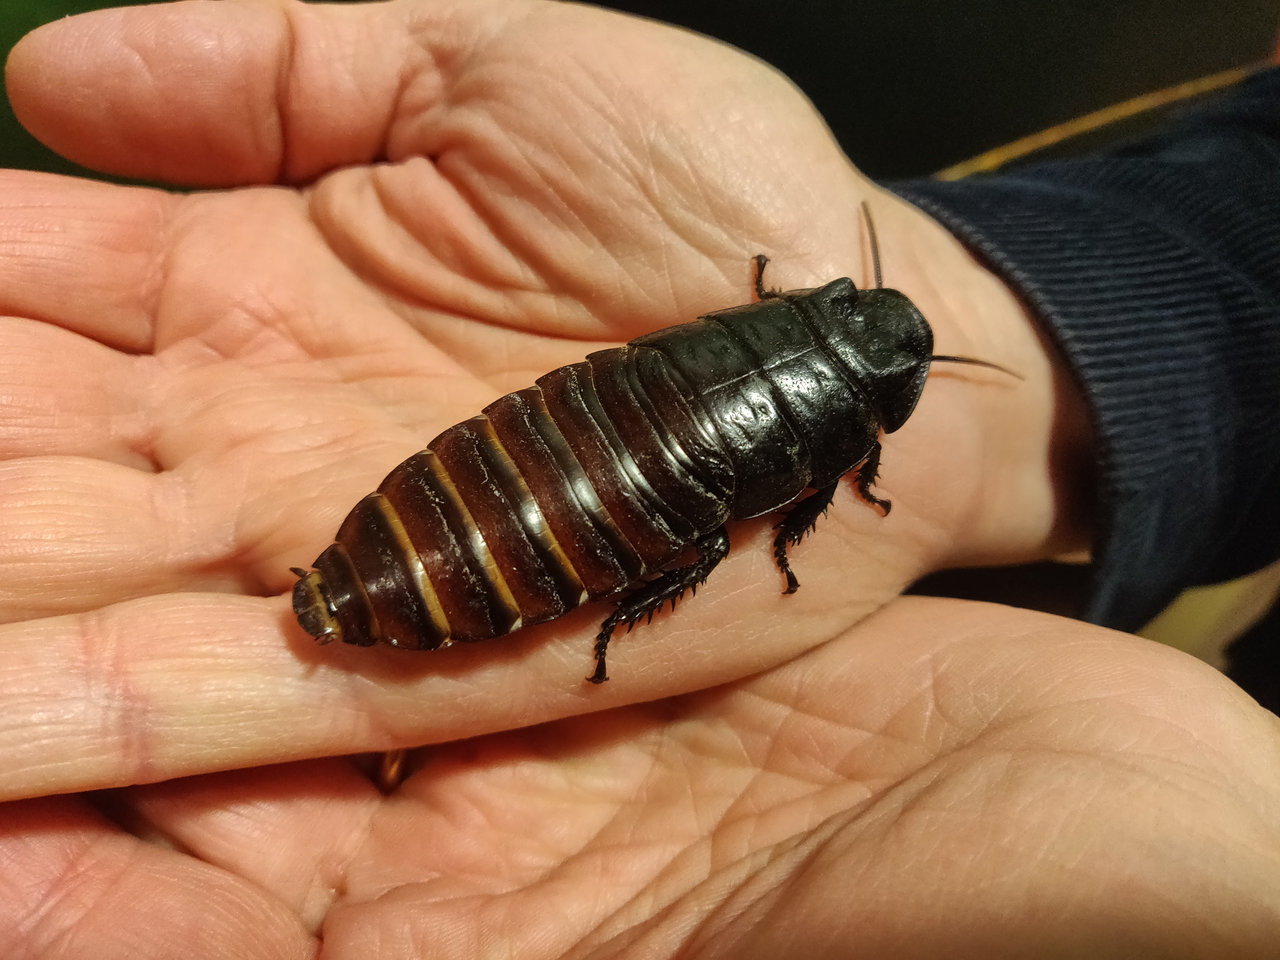 Sissende kakkerlak